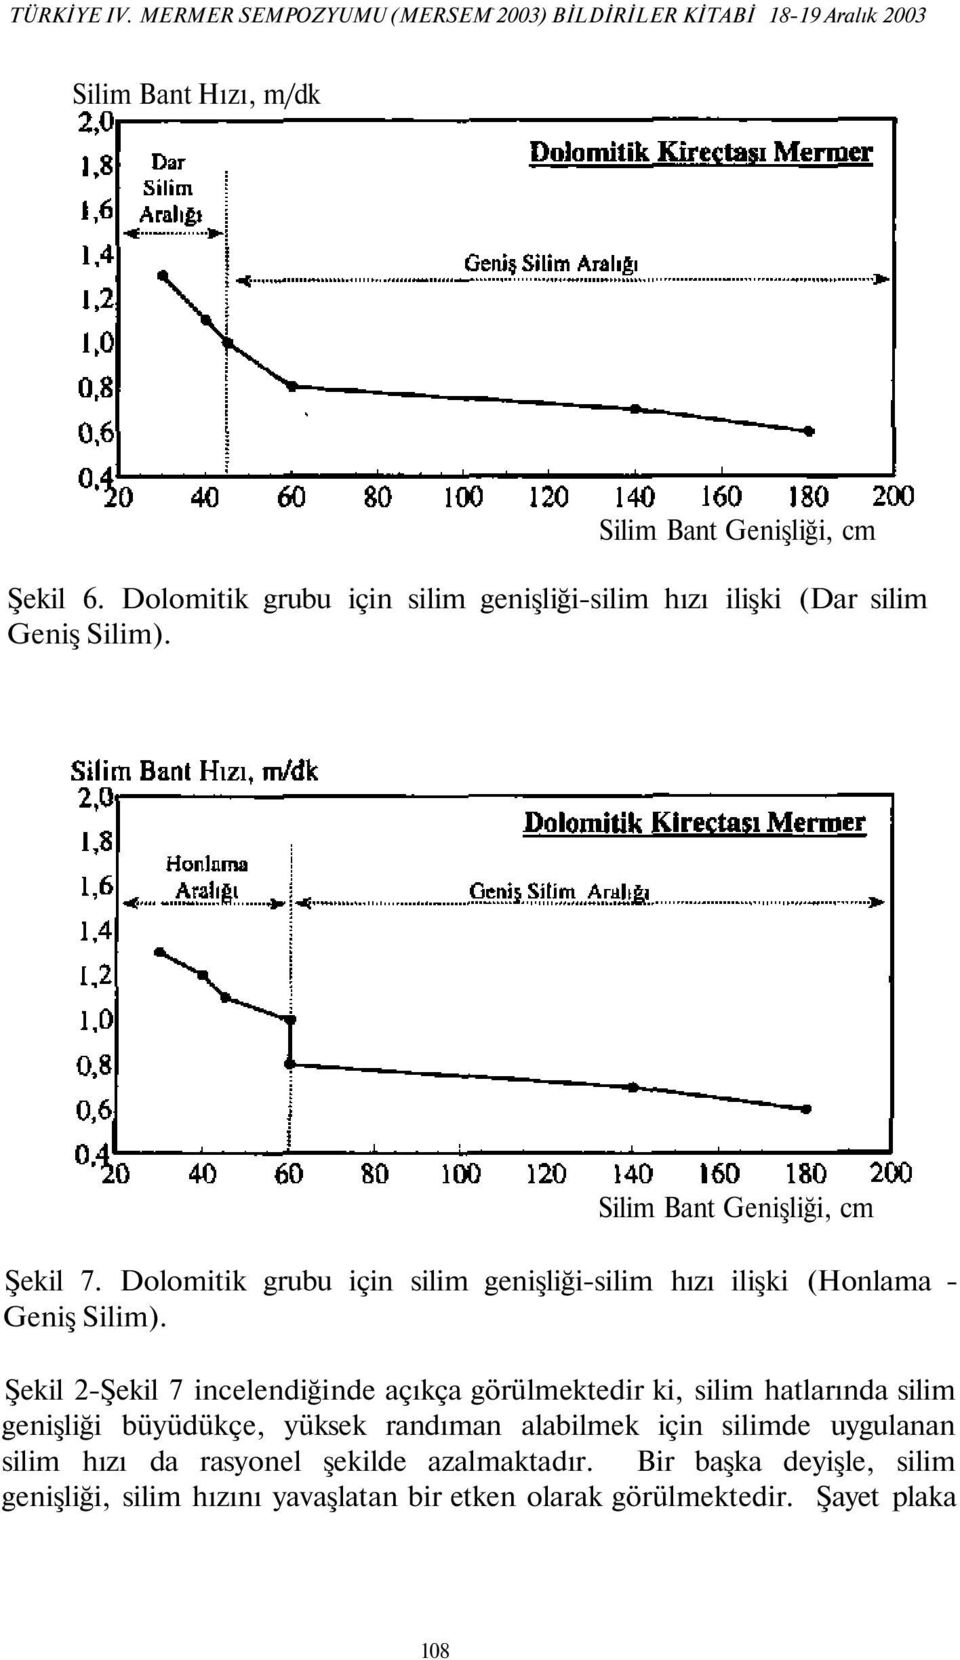 Dolomitik grubu için silim genişliği-silim hızı ilişki (Honlama - Geniş Silim).